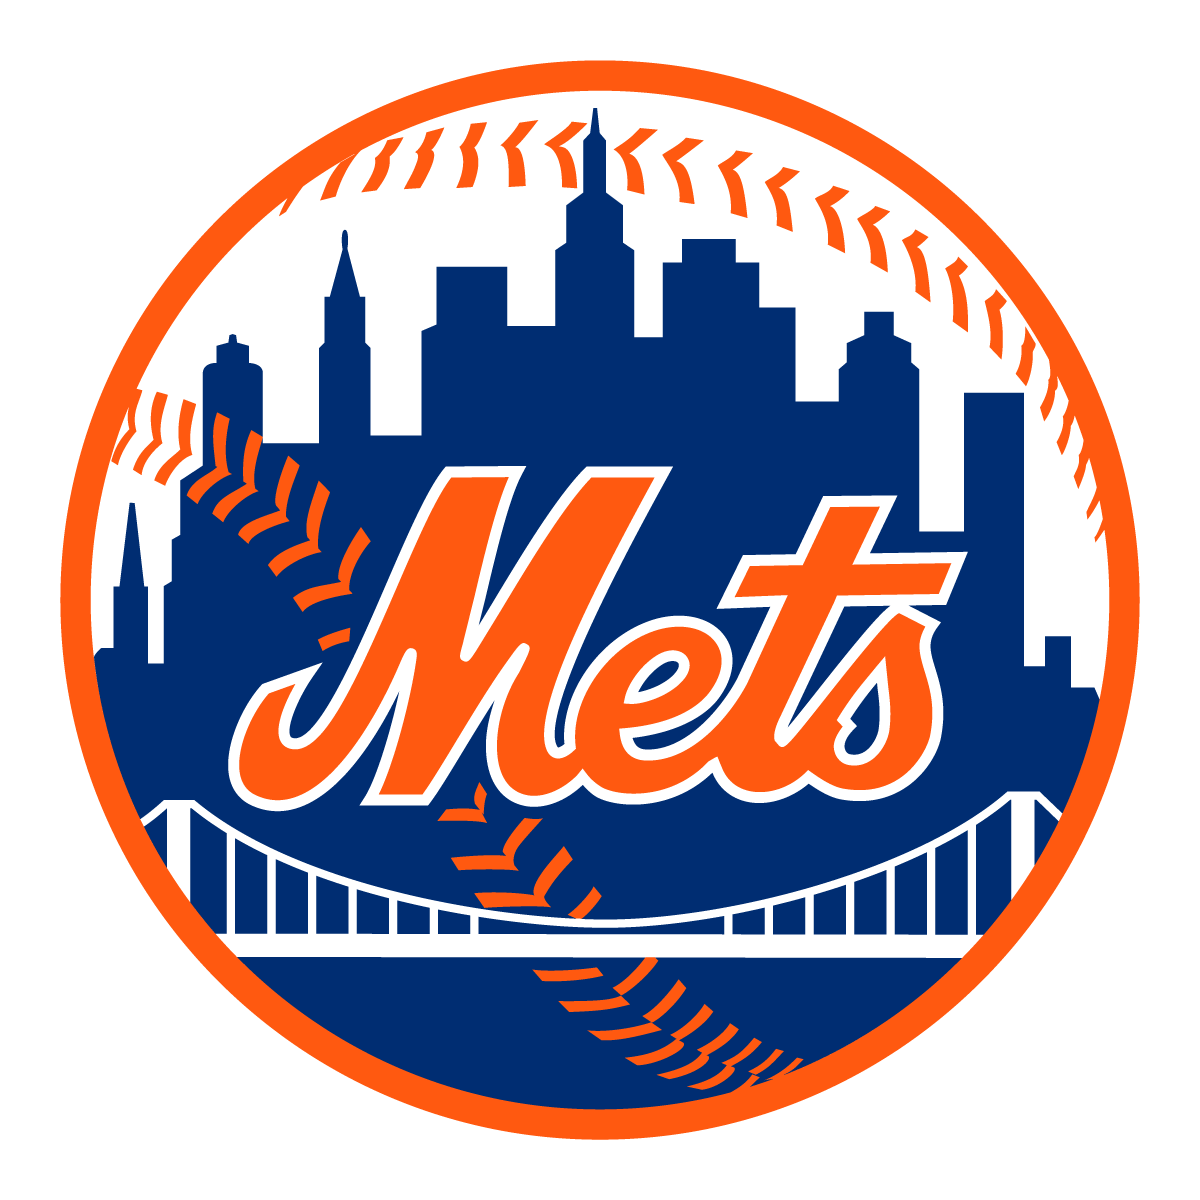 Baseball Team Logo - New York Mets Baseball Team Logo Vector. Free Vector Silhouette